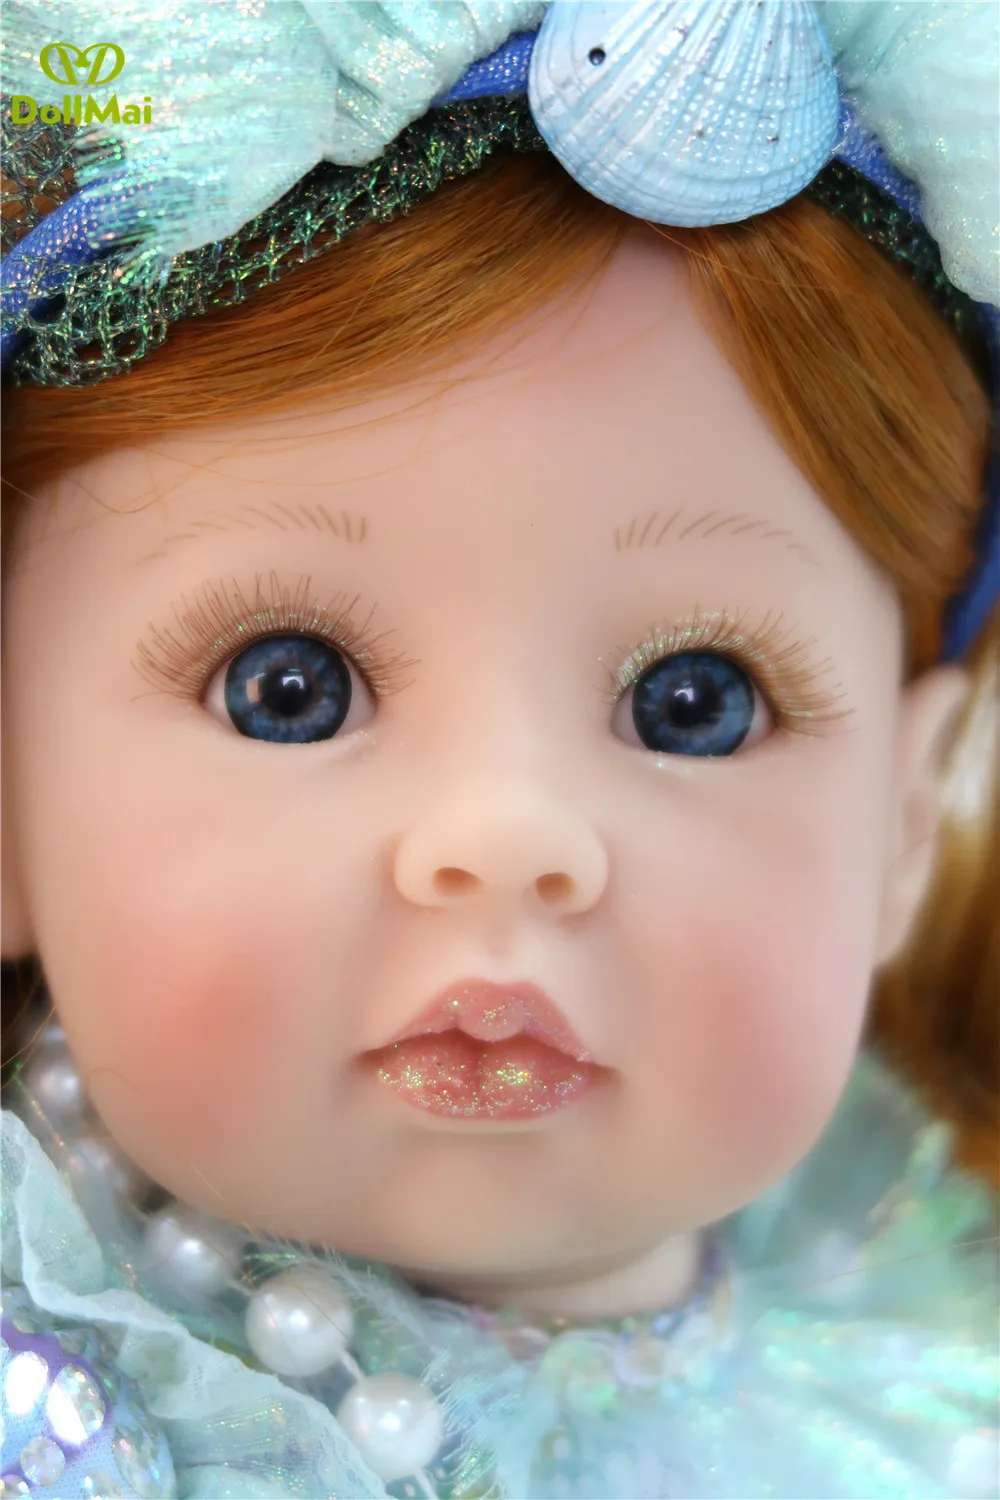 princesa vinil silicone reborn bebê menina bonecas